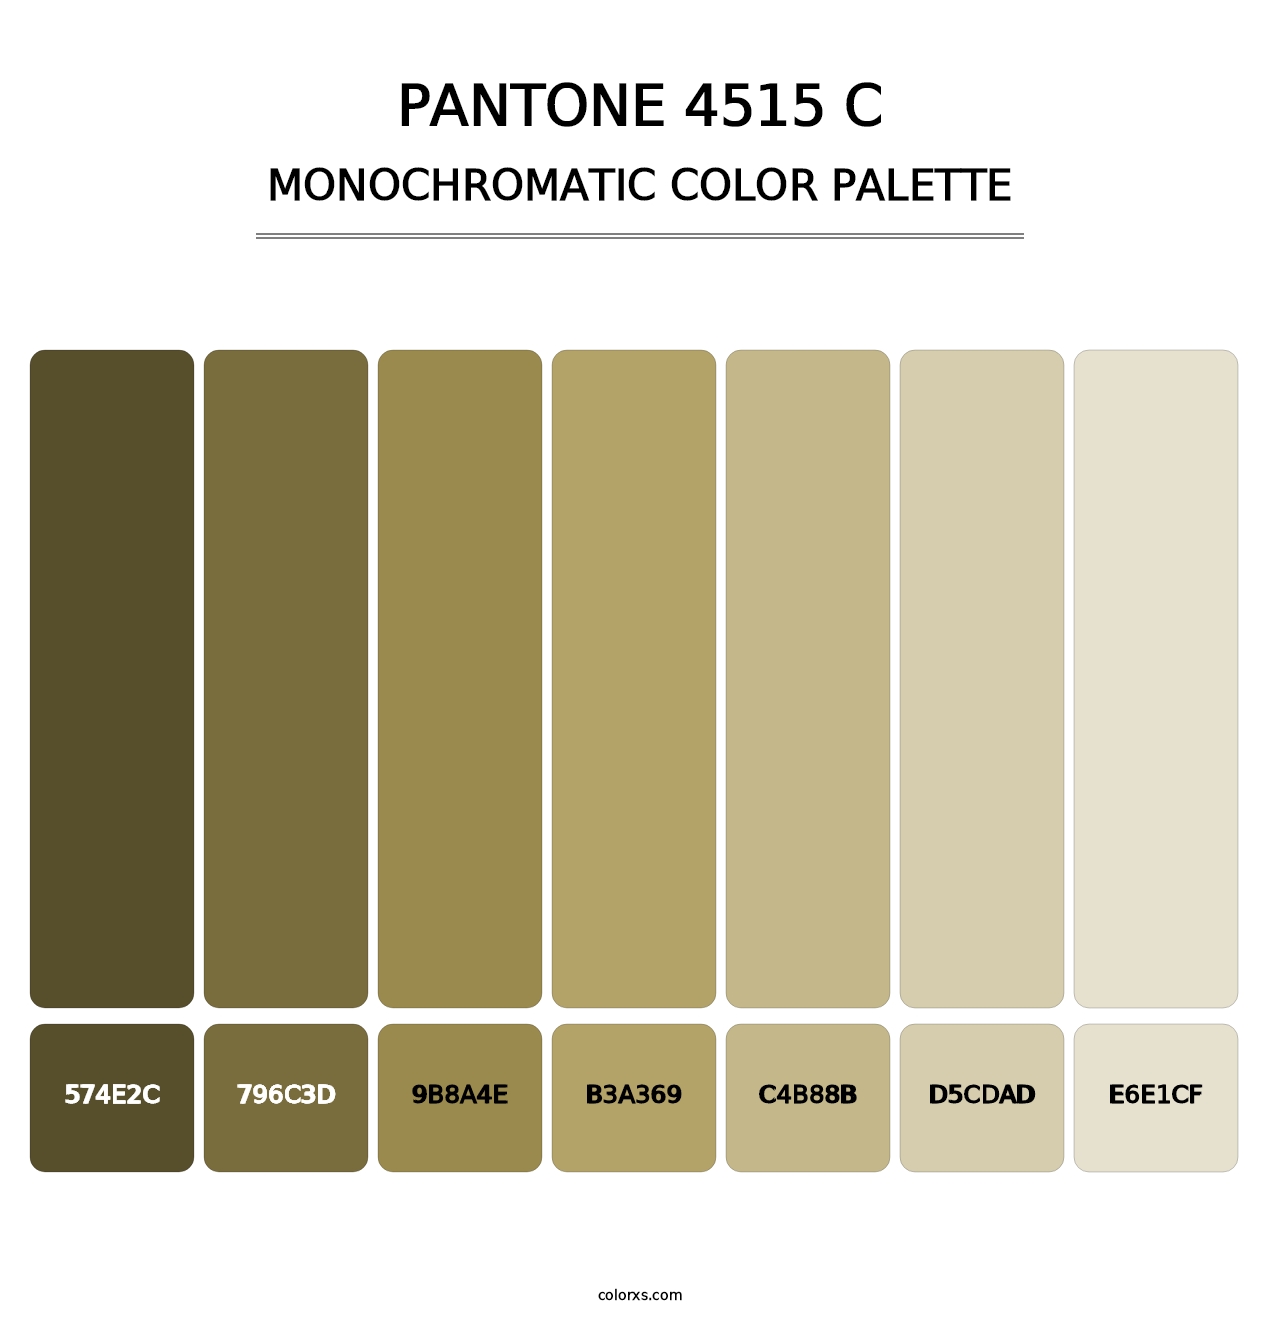 PANTONE 4515 C - Monochromatic Color Palette